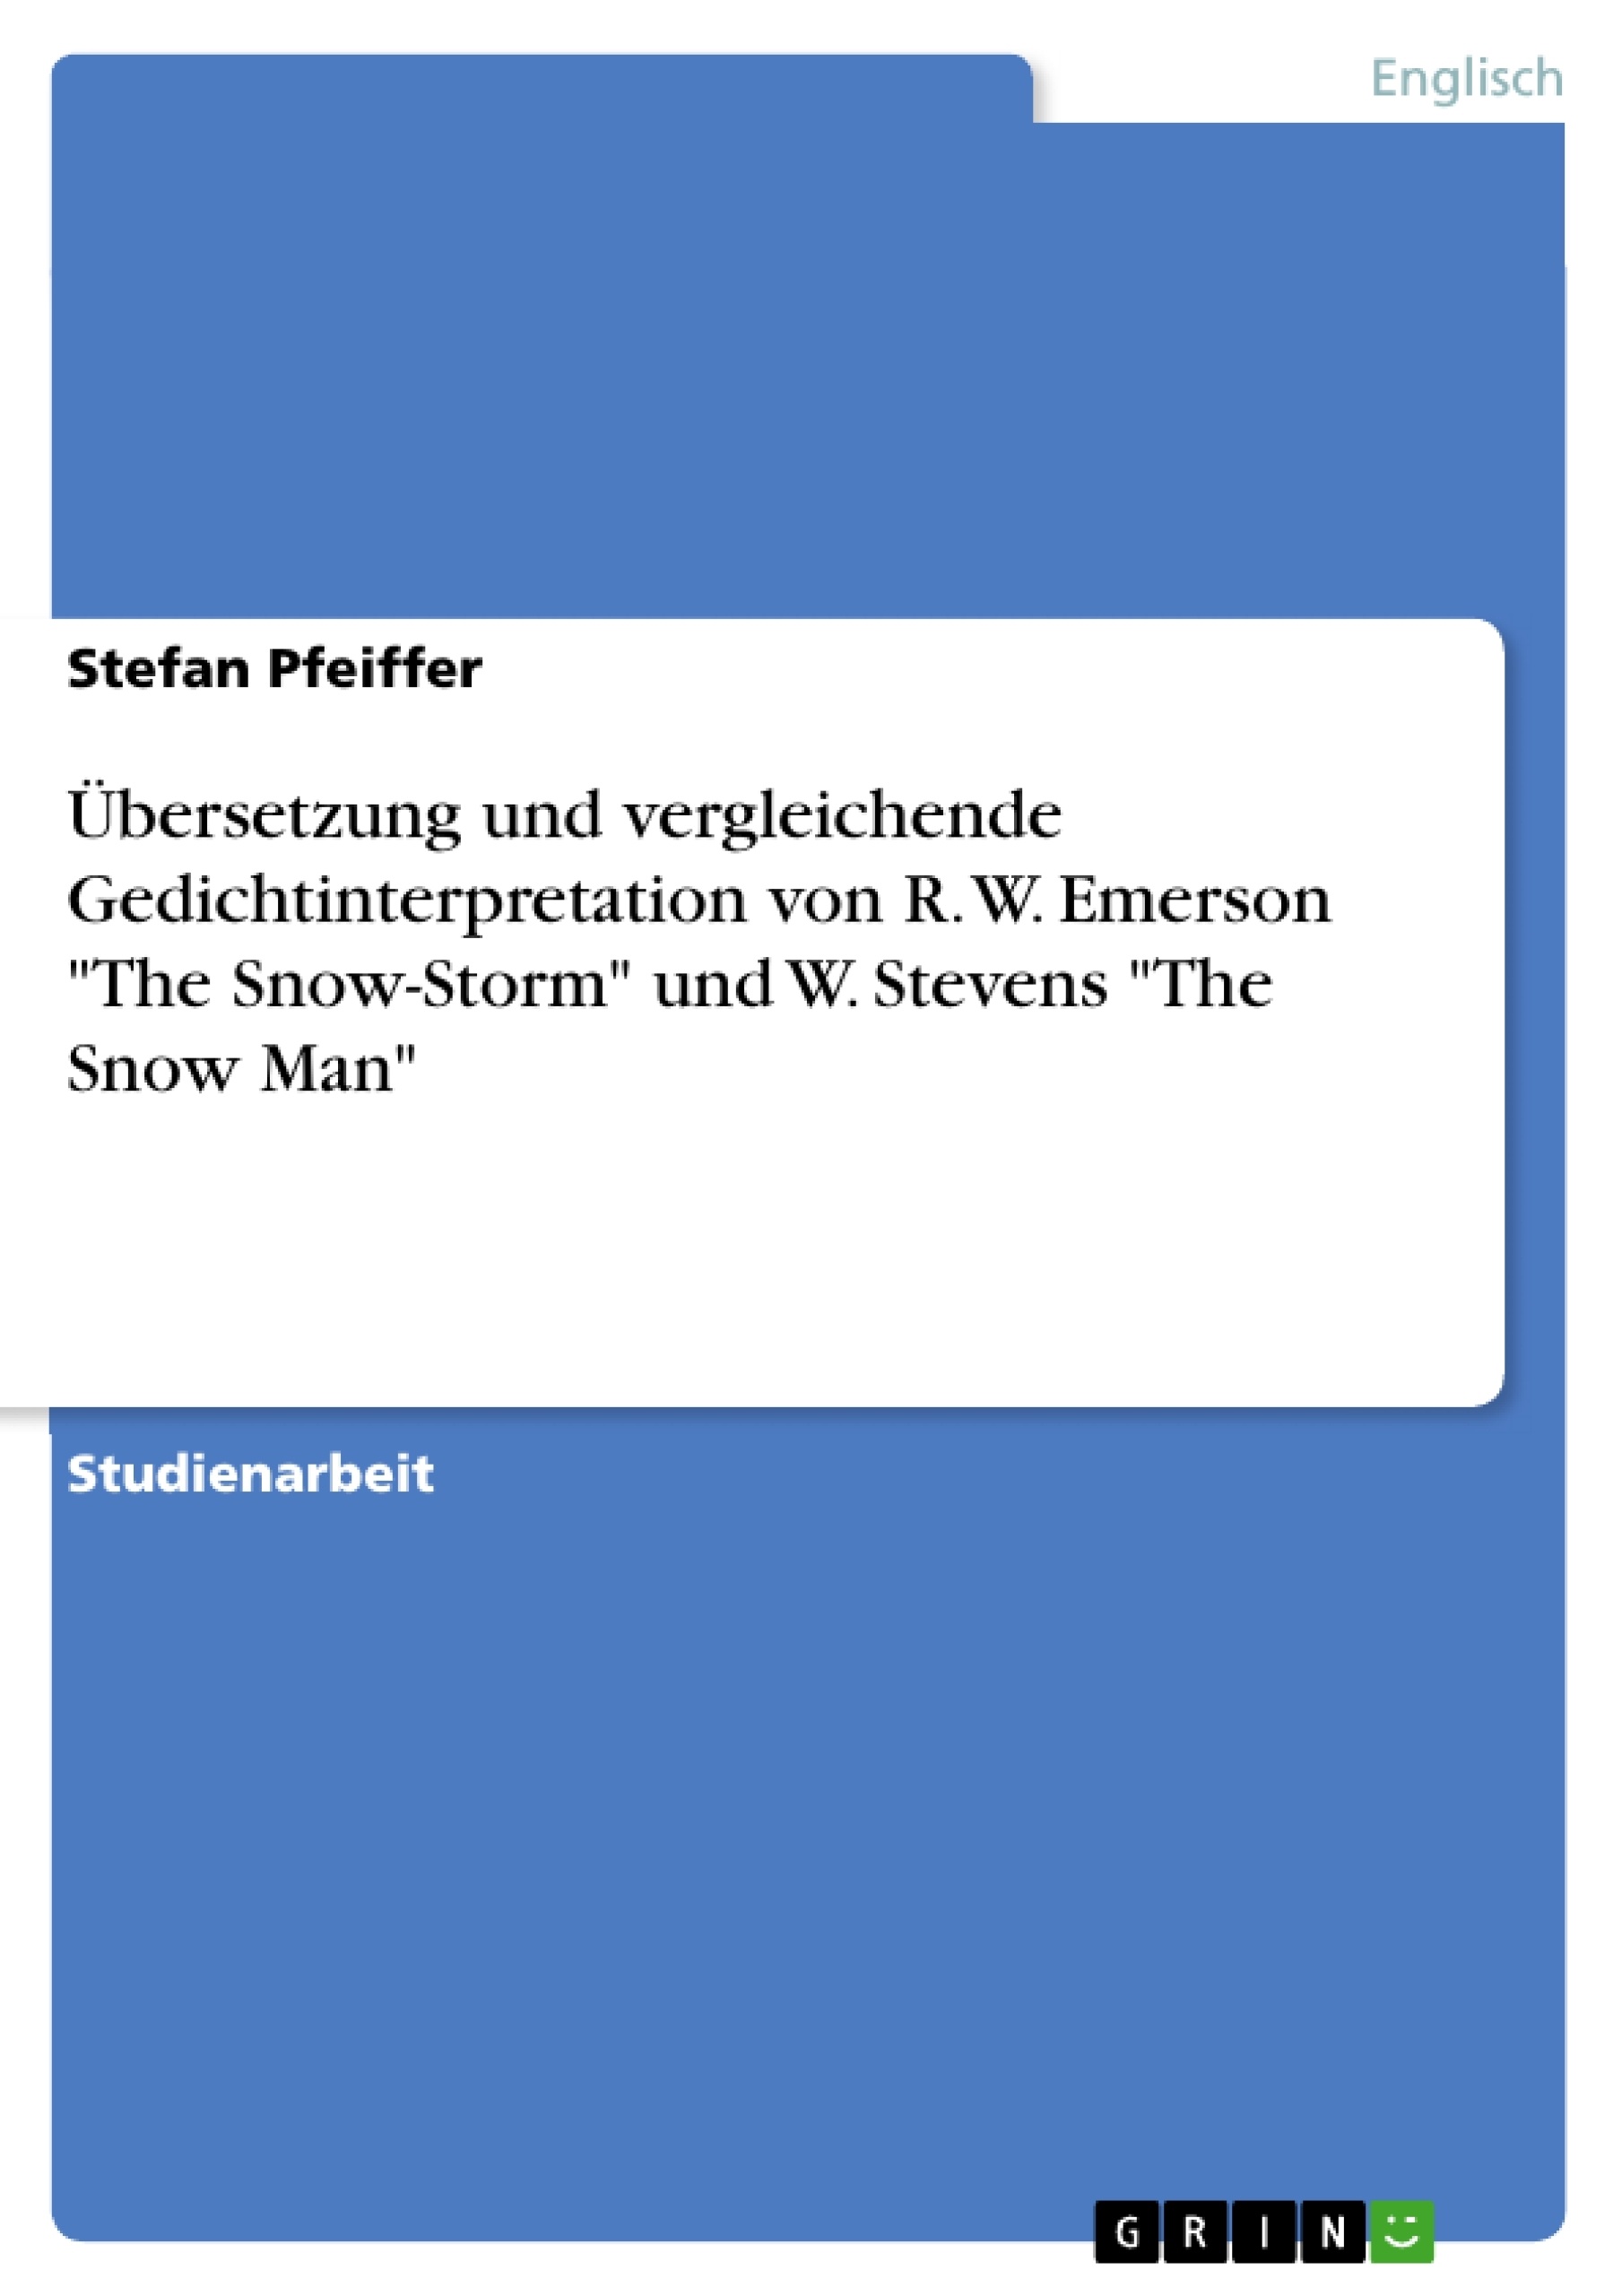 Título: Übersetzung und vergleichende Gedichtinterpretation von R. W. Emerson "The Snow-Storm" und W. Stevens "The Snow Man"